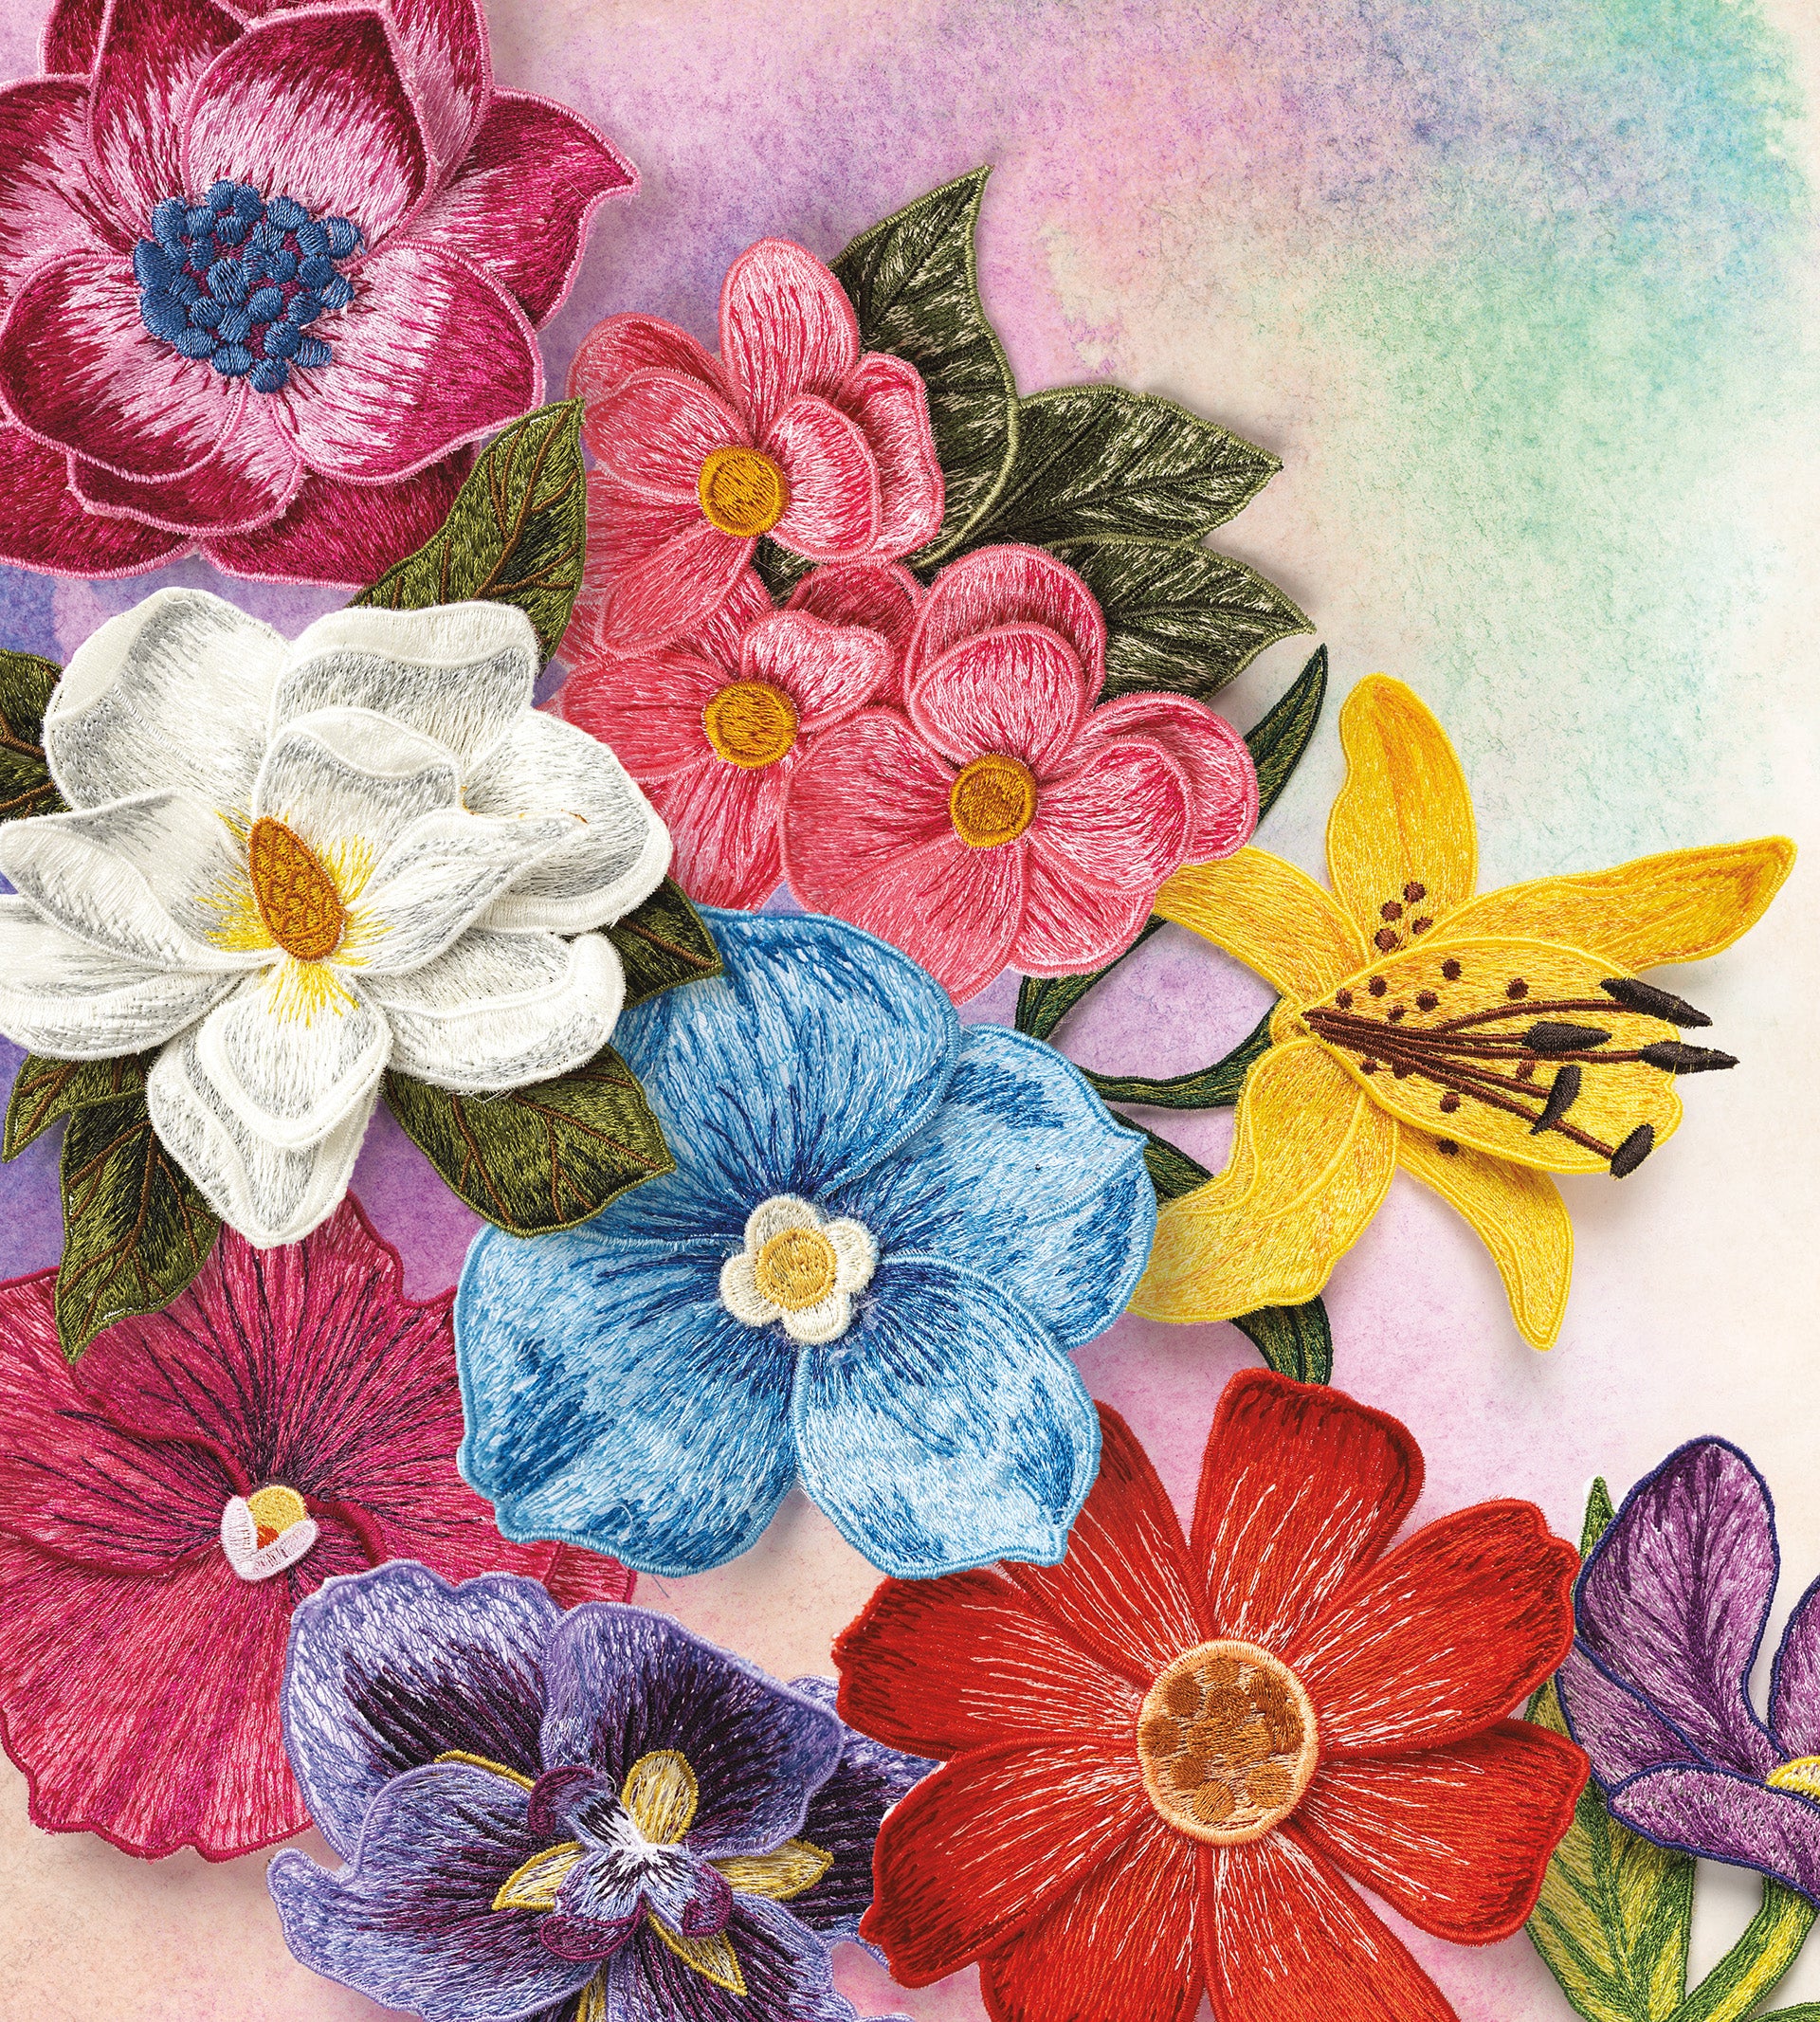 Poppy Vintage Stitch Monogram Frame Machine Embroidery Design Floral Flower